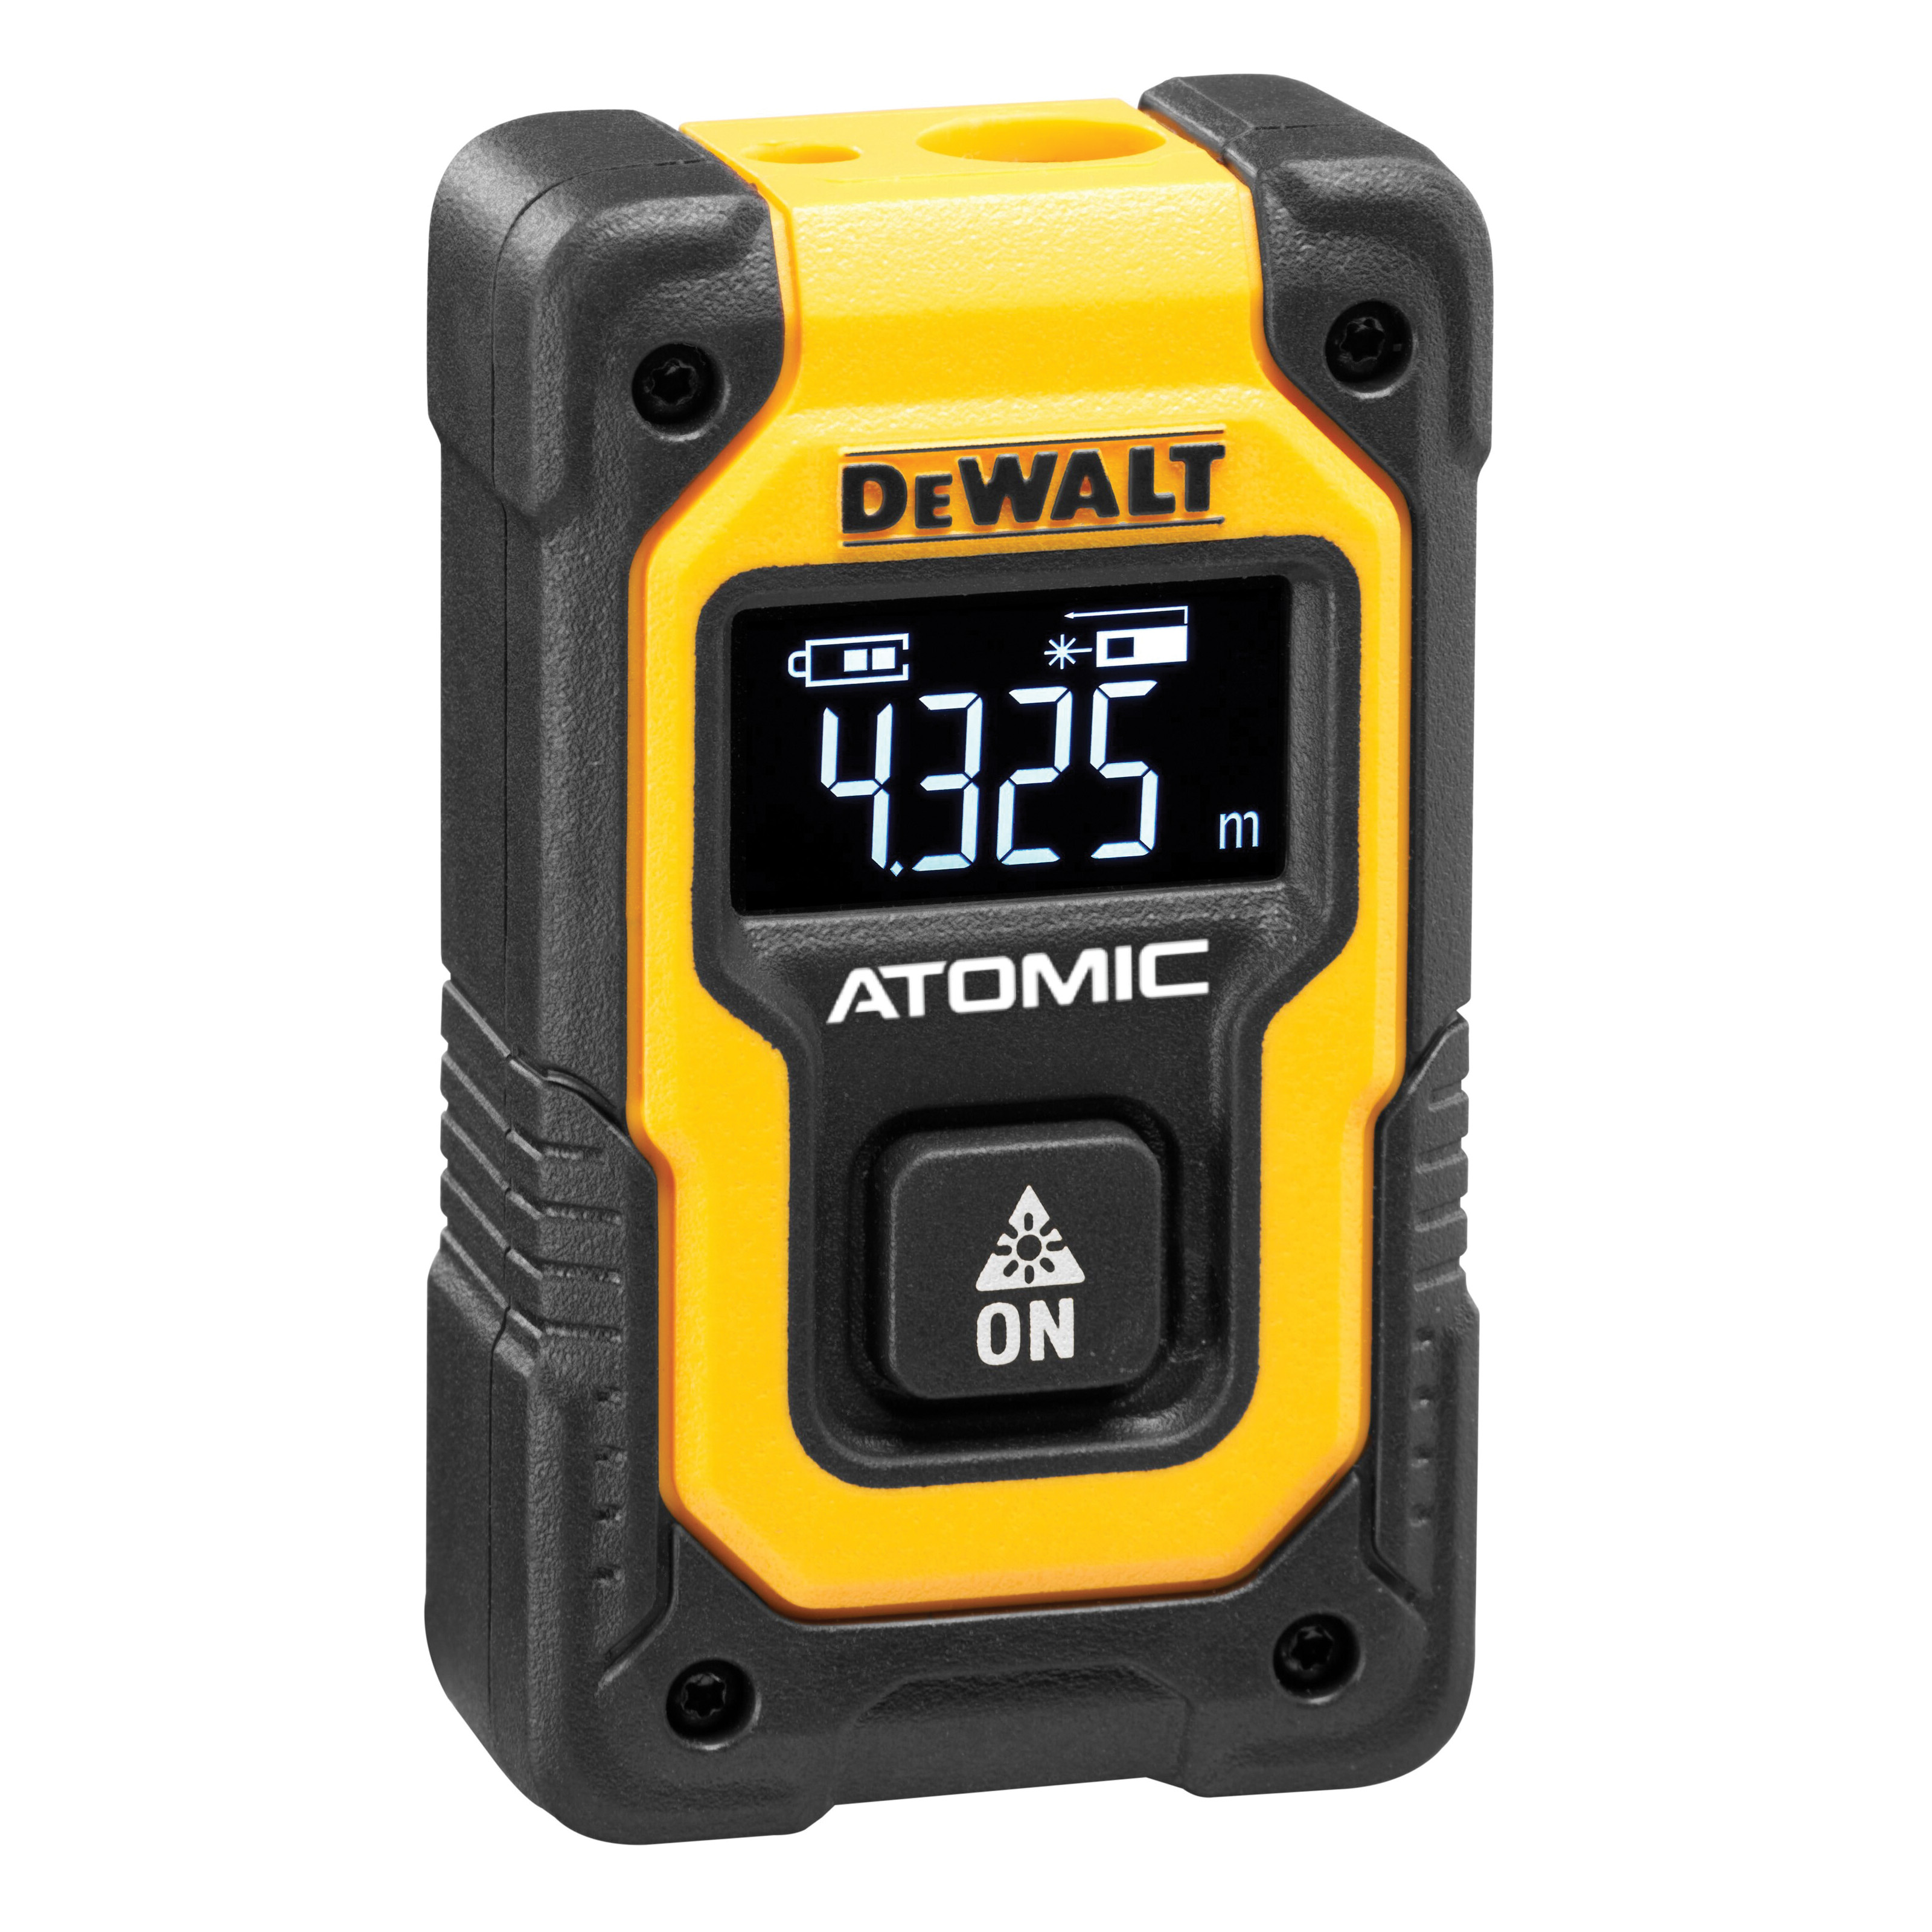 DeWALT Atomic Compact Series DW055PL Pocket Laser Distance Measurer, 55 ft, LCD Display - 2